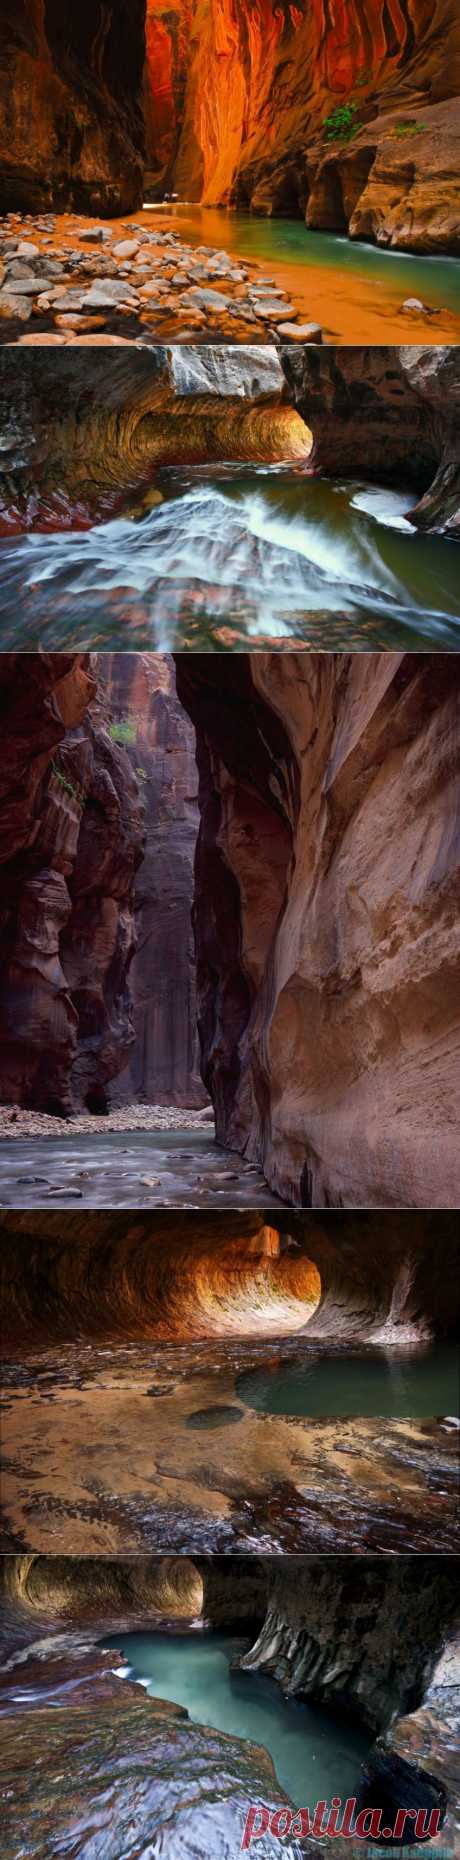 Впечатляющие формы каньона Зайон (Zion Canyon) | Newpix.ru - позитивный интернет-журнал